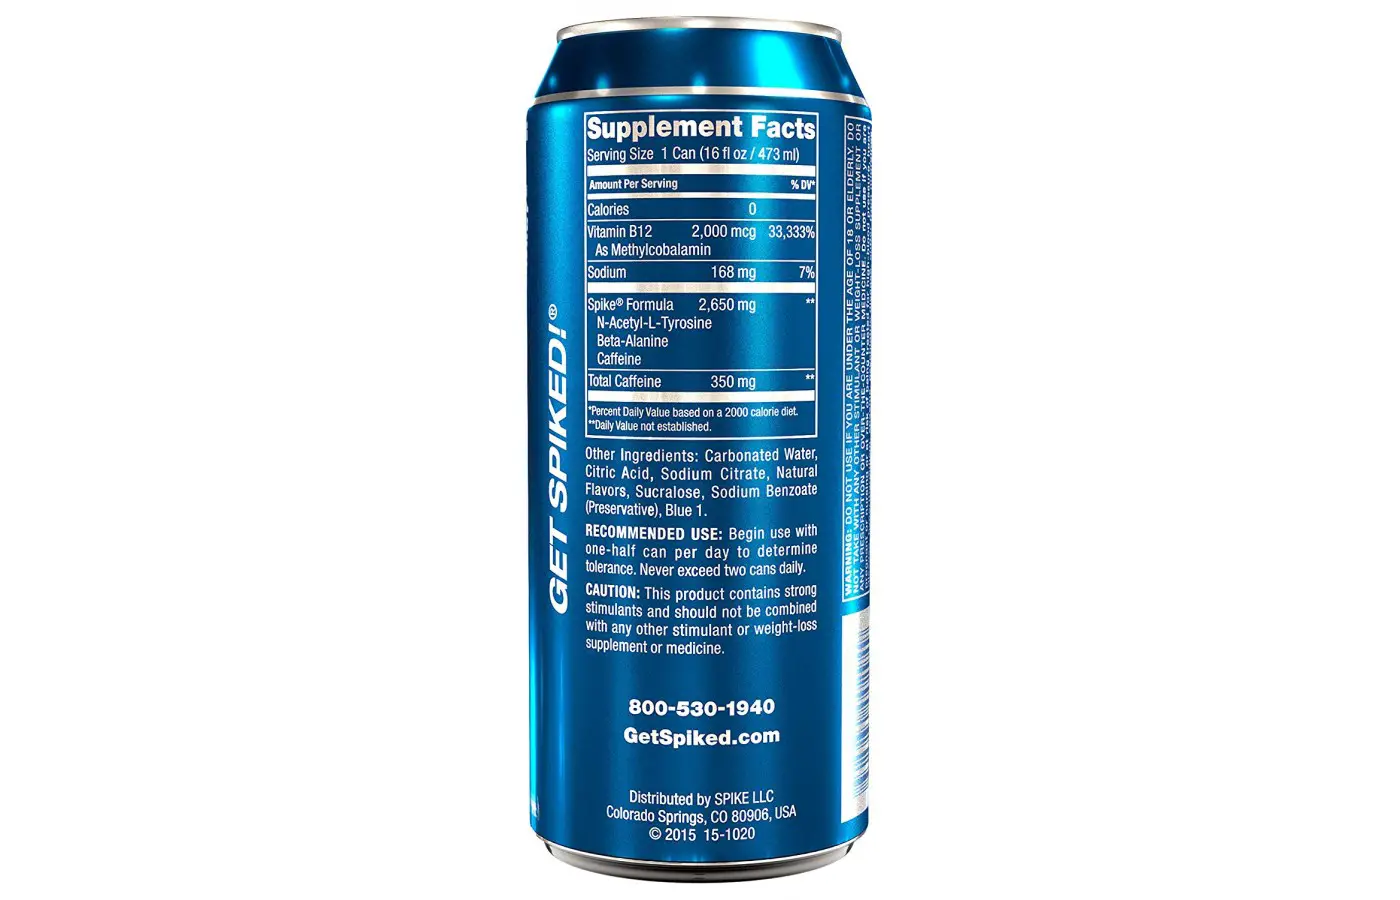 32 Spike Energy Drink Label - Labels Design Ideas 2020